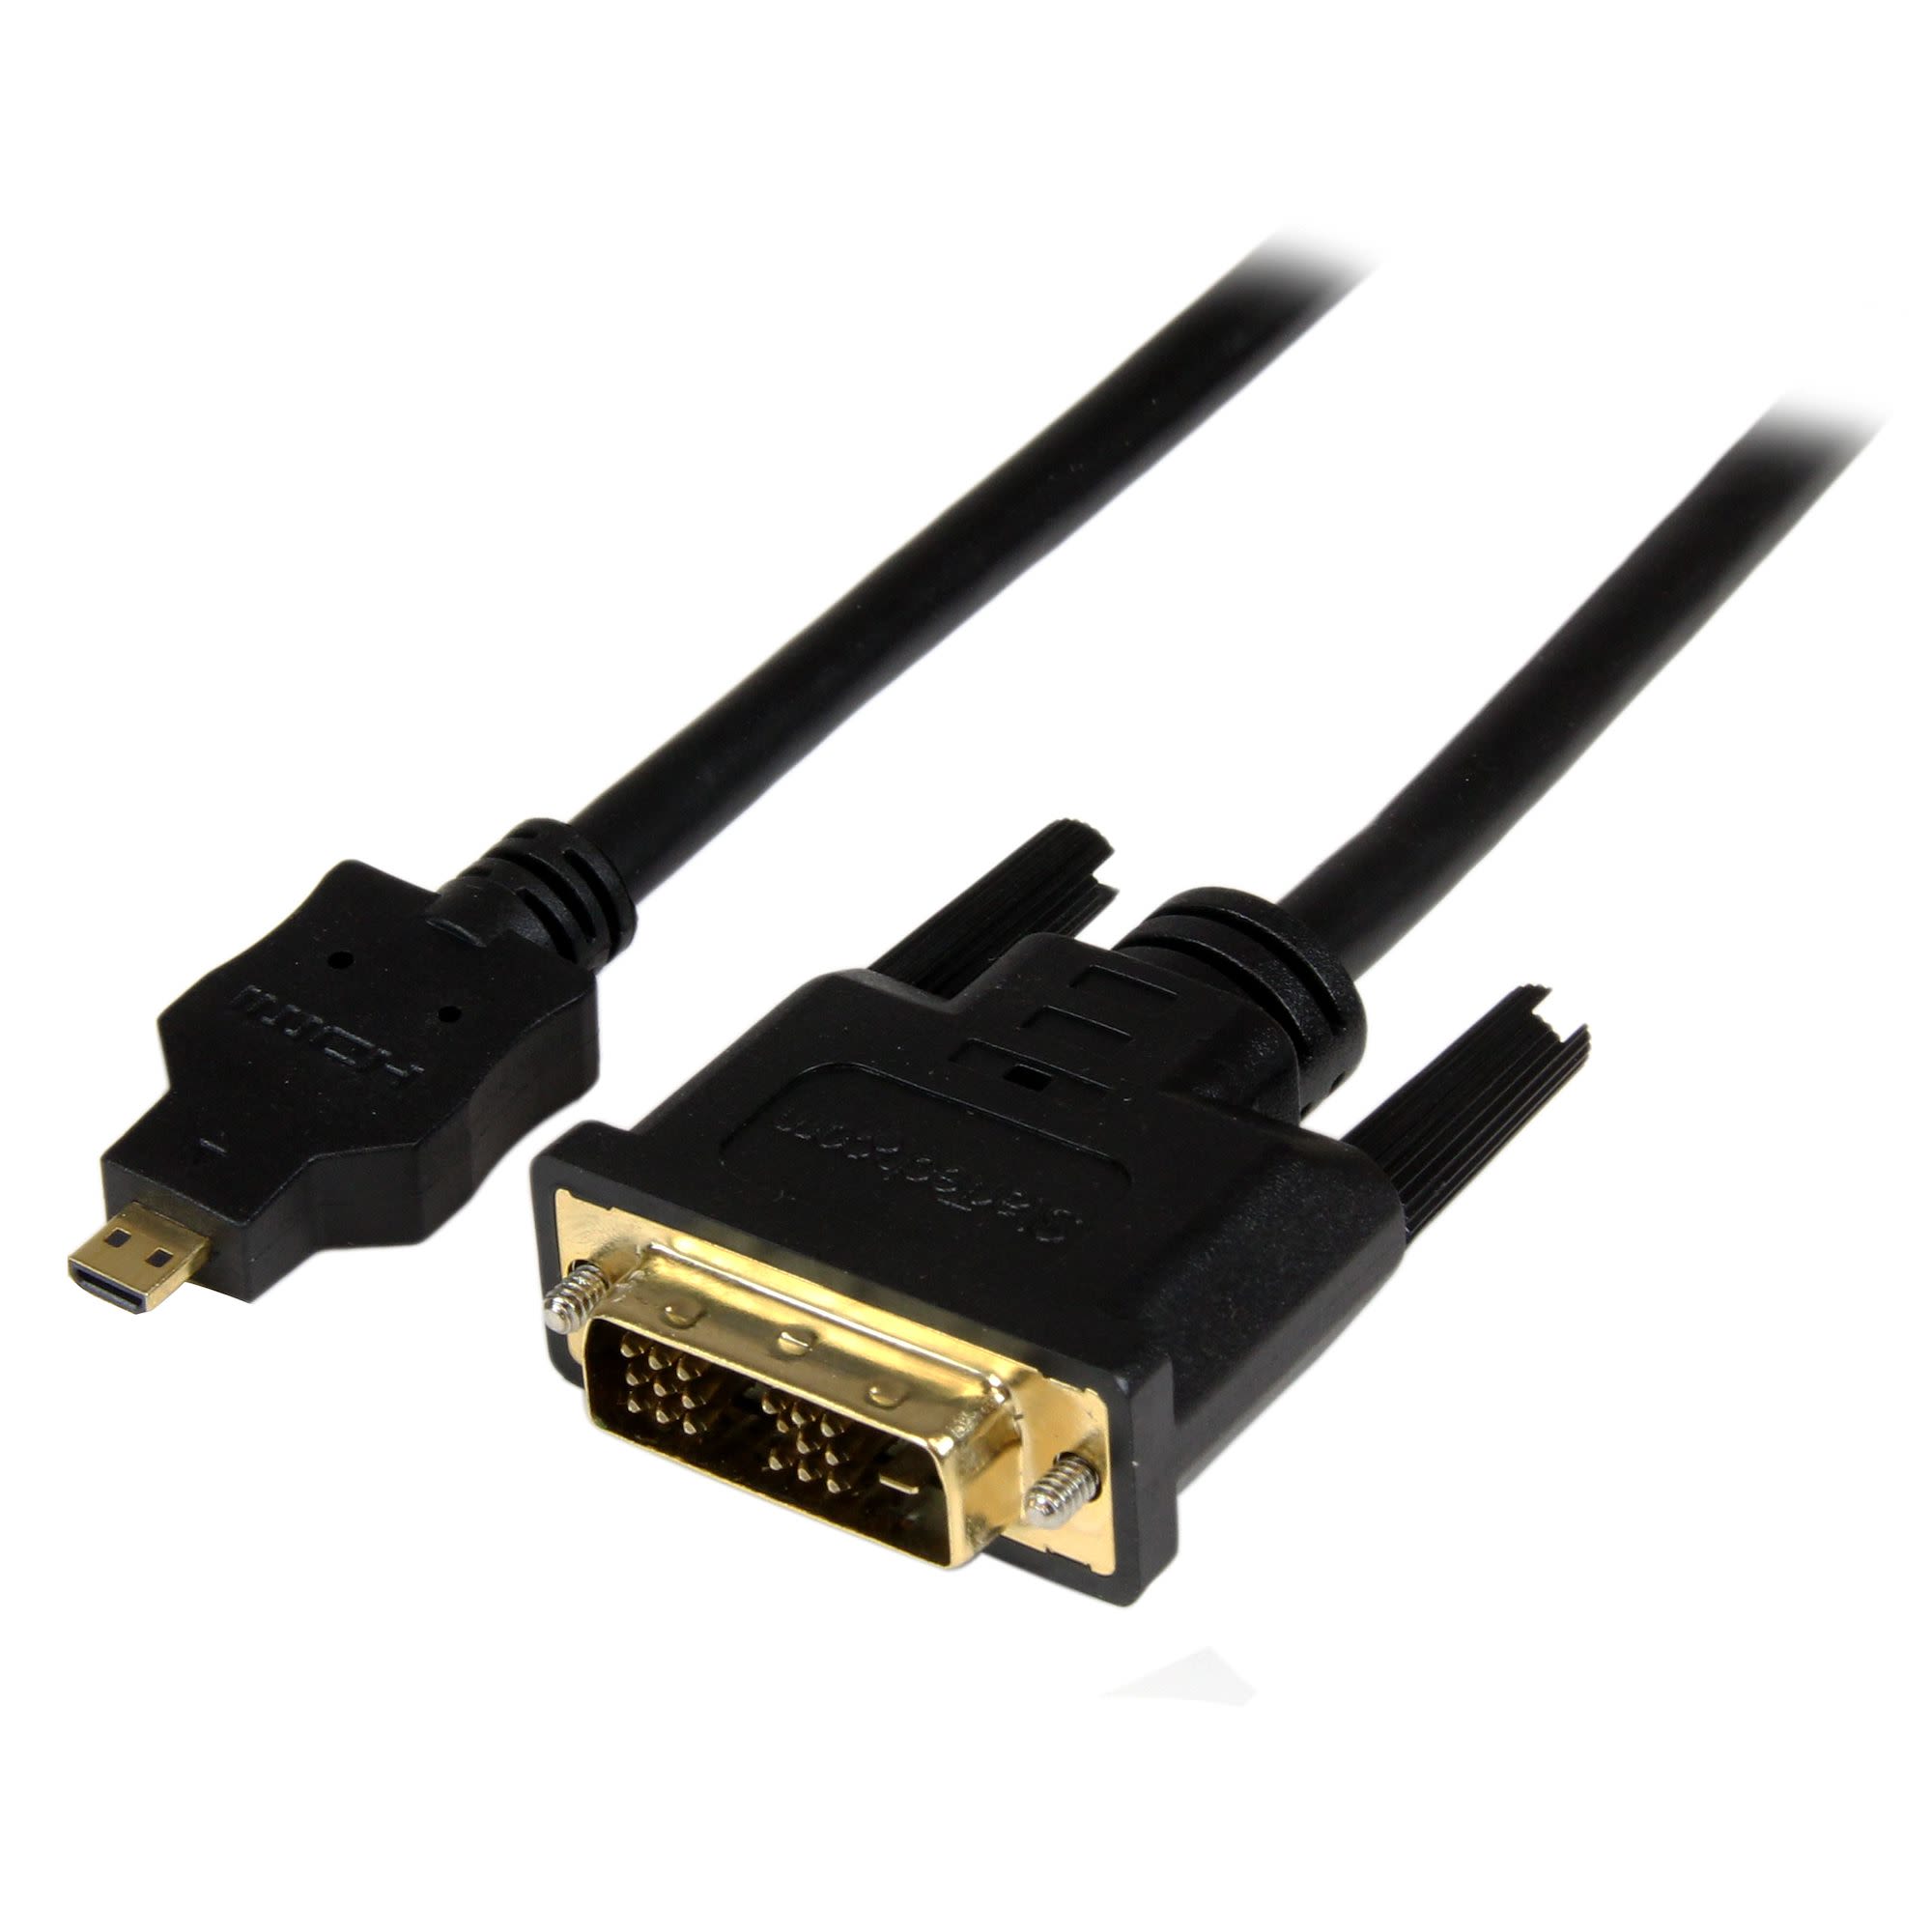 StarTech.com 1920x1200 Male Micro HDMI to Male DVI-D Cable, 1m